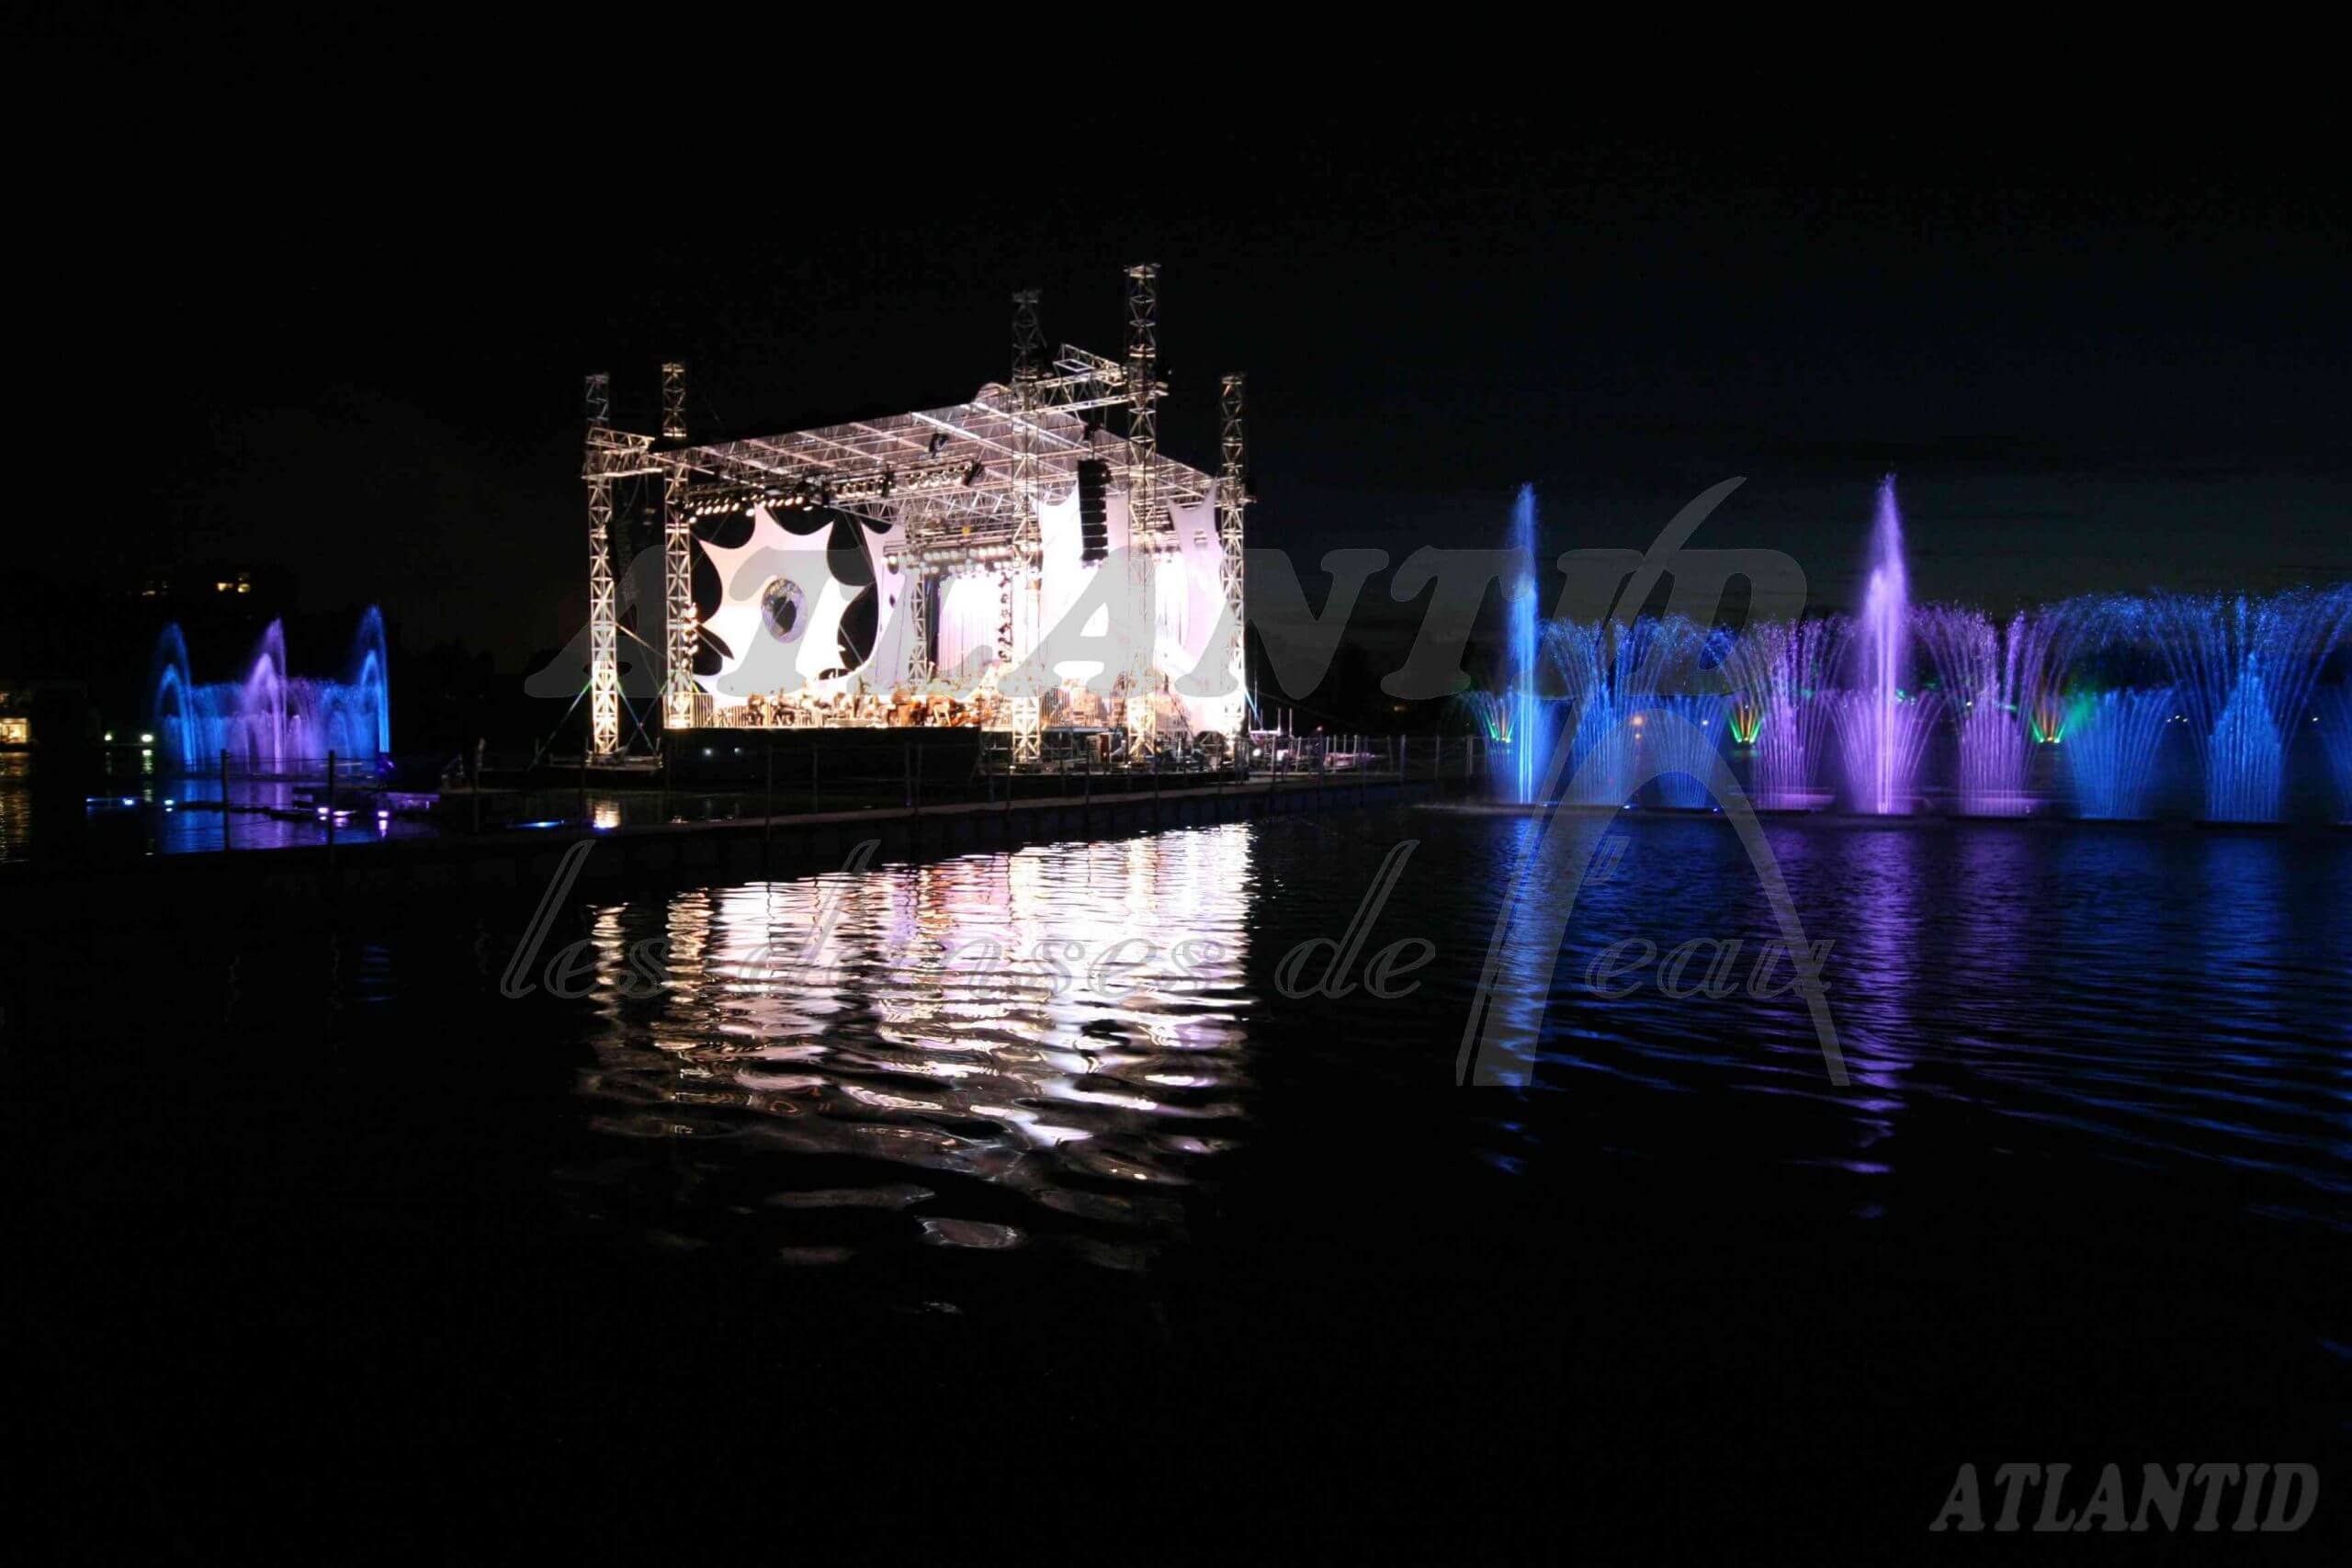 Atlantid - Photo d'une scène avec un spectacle de fontaines en fond de nuit